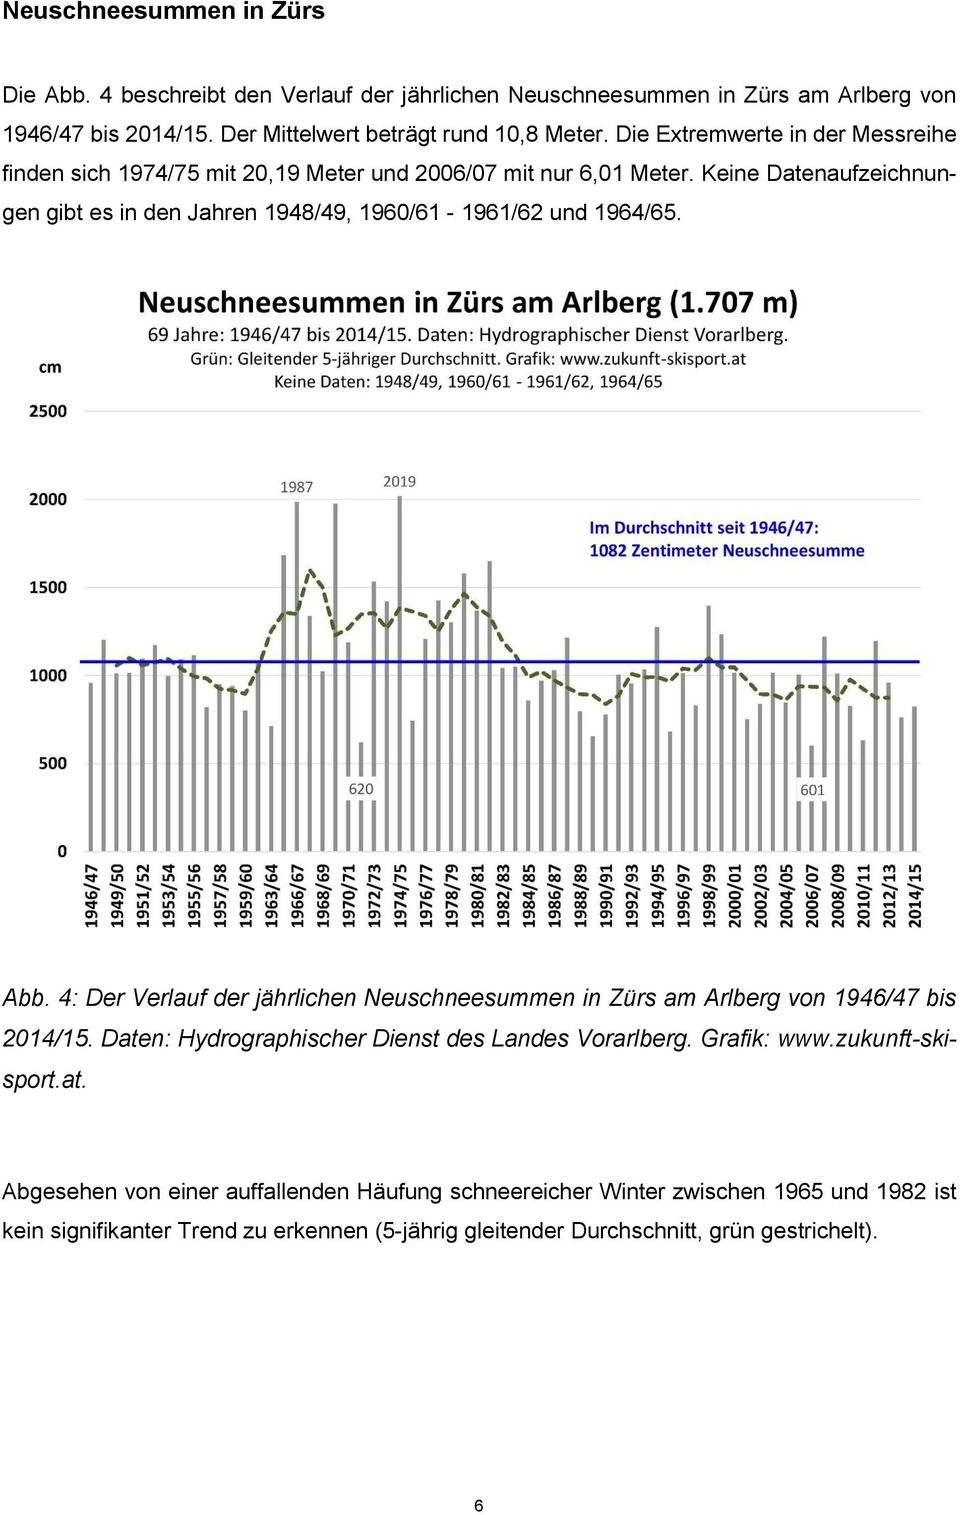 Keine Datenaufzeichnungen gibt es in den Jahren 1948/49, 1960/61-1961/62 und 1964/65. Abb. 4: Der Verlauf der jährlichen Neuschneesummen in Zürs am Arlberg von 1946/47 bis 2014/15.